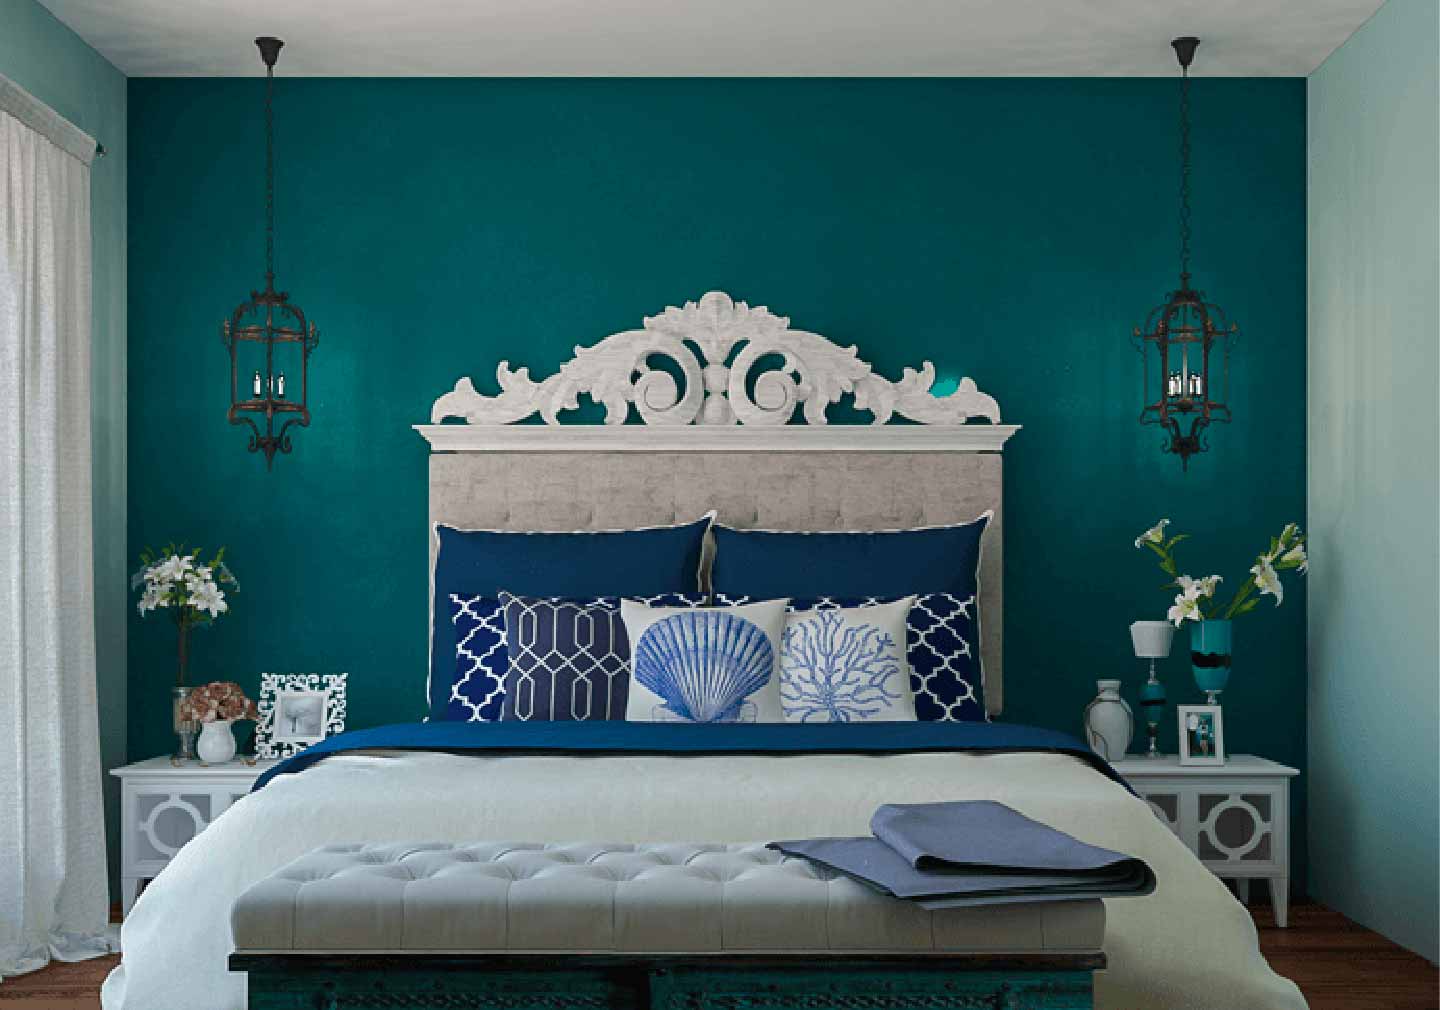 Moroccan - Bedroom Design Idea